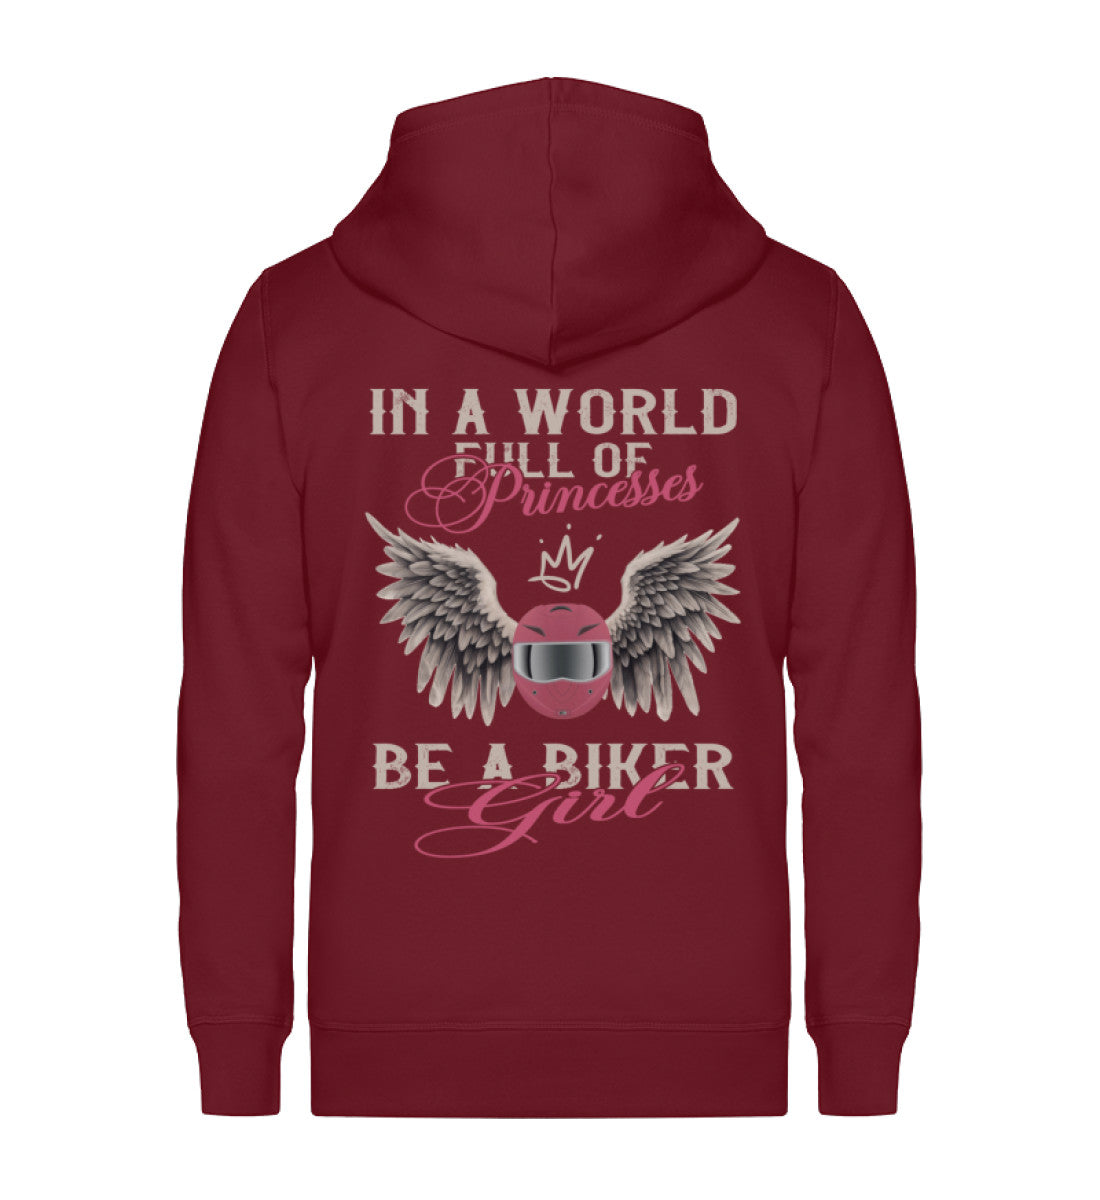 Eine Reißverschluss-Jacke für Motorradfahrerinnen von Wingbikers mit dem Aufdruck, In A World Full Of Princesses - Be A Biker Girl, in burgunder weinrot.